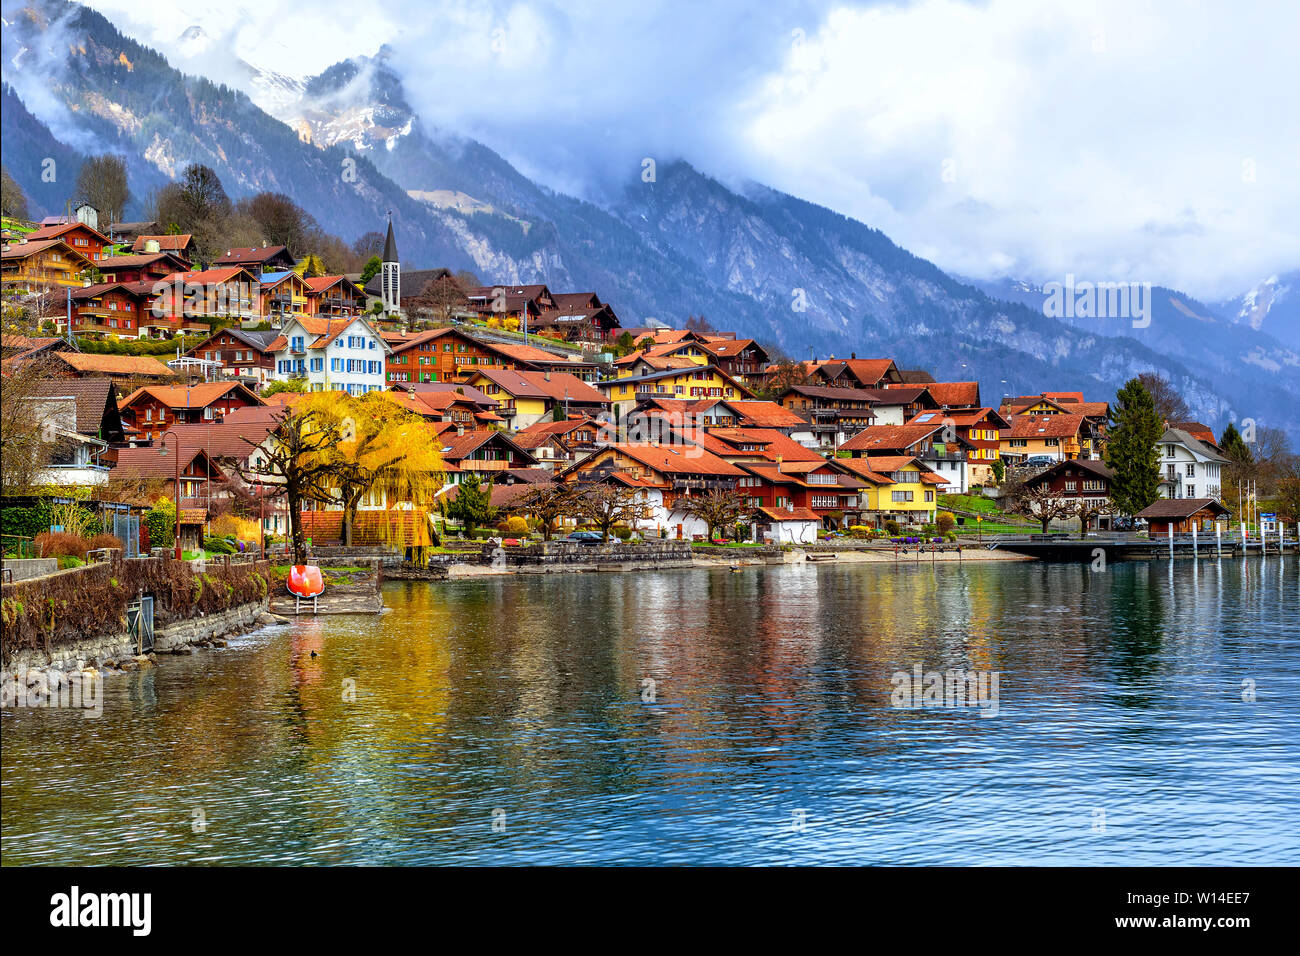 Vieille ville de Oberried, Brienz, Interlaken et misty alpes reflétant dans le lac, Suisse Banque D'Images